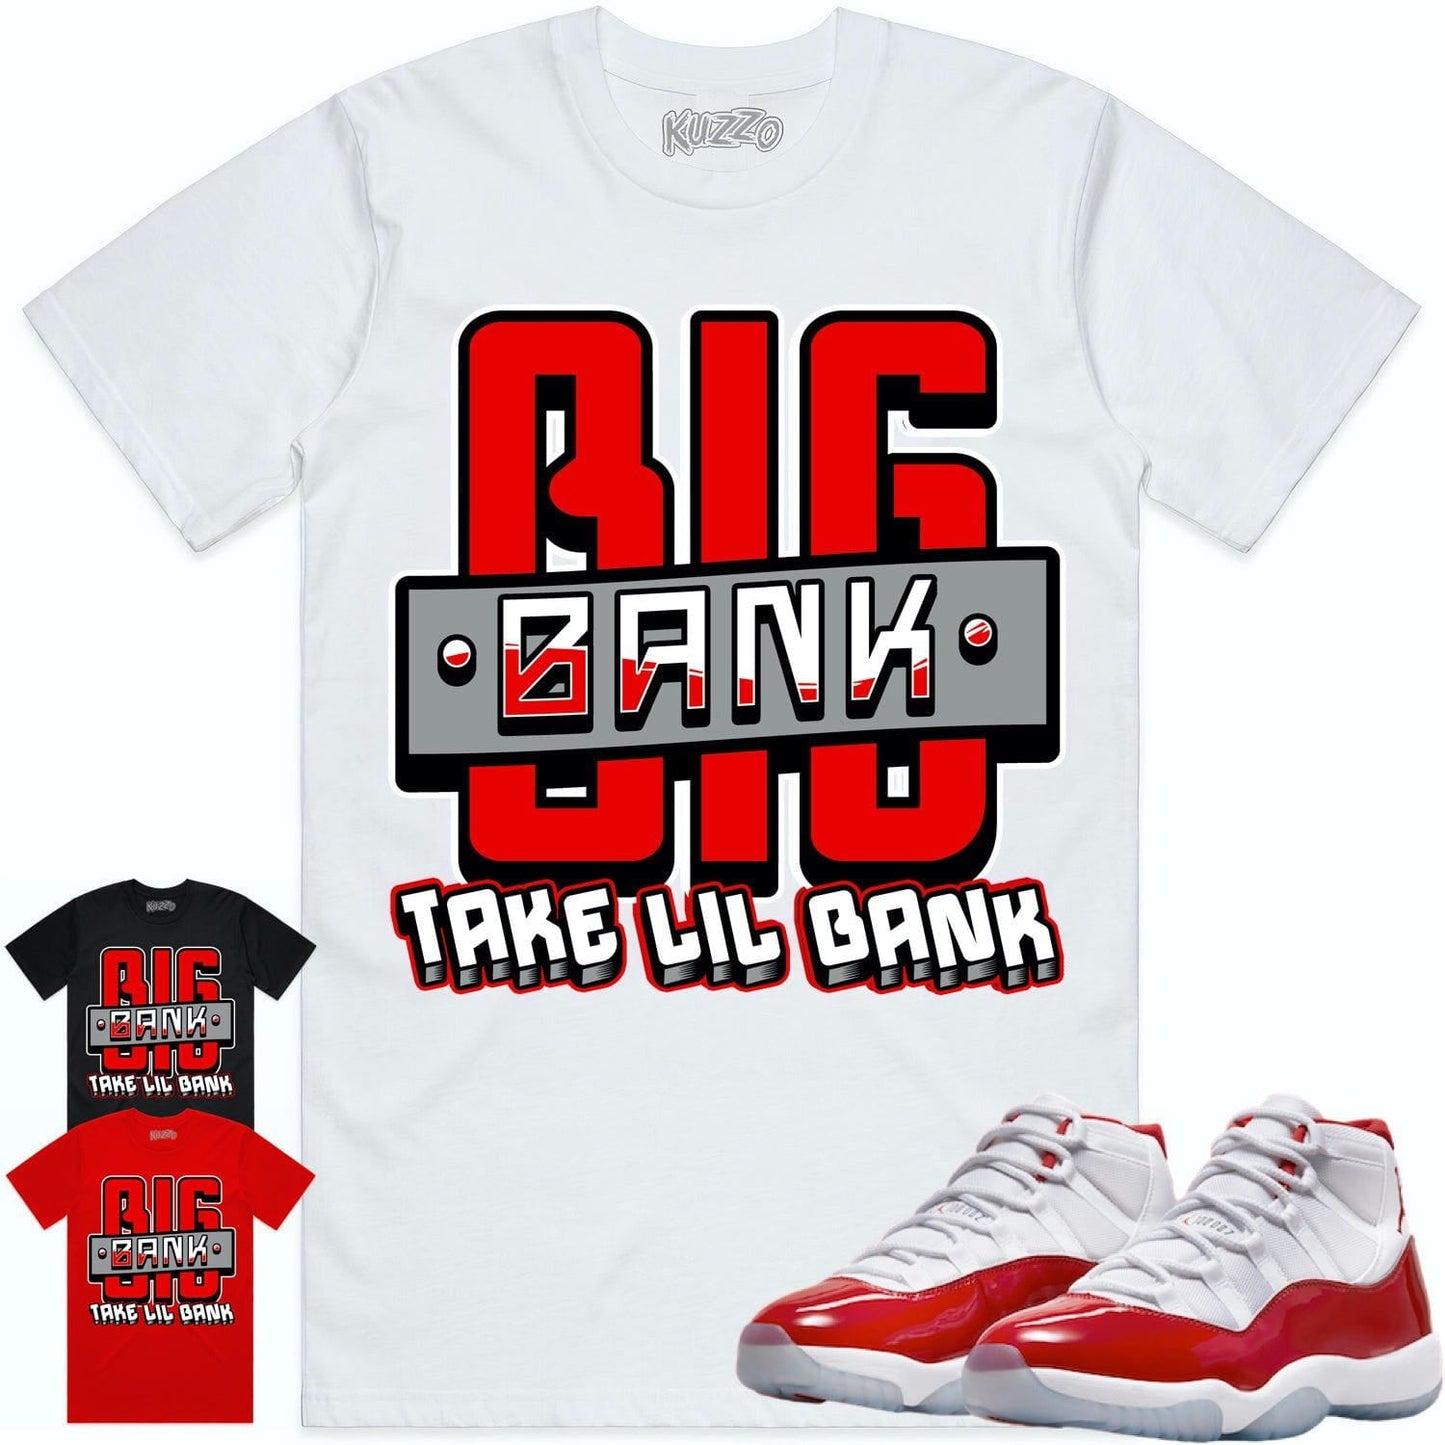 Cherry 11s Shirt - Jordan Retro 11 Cherry Shirts - Red Big Bank